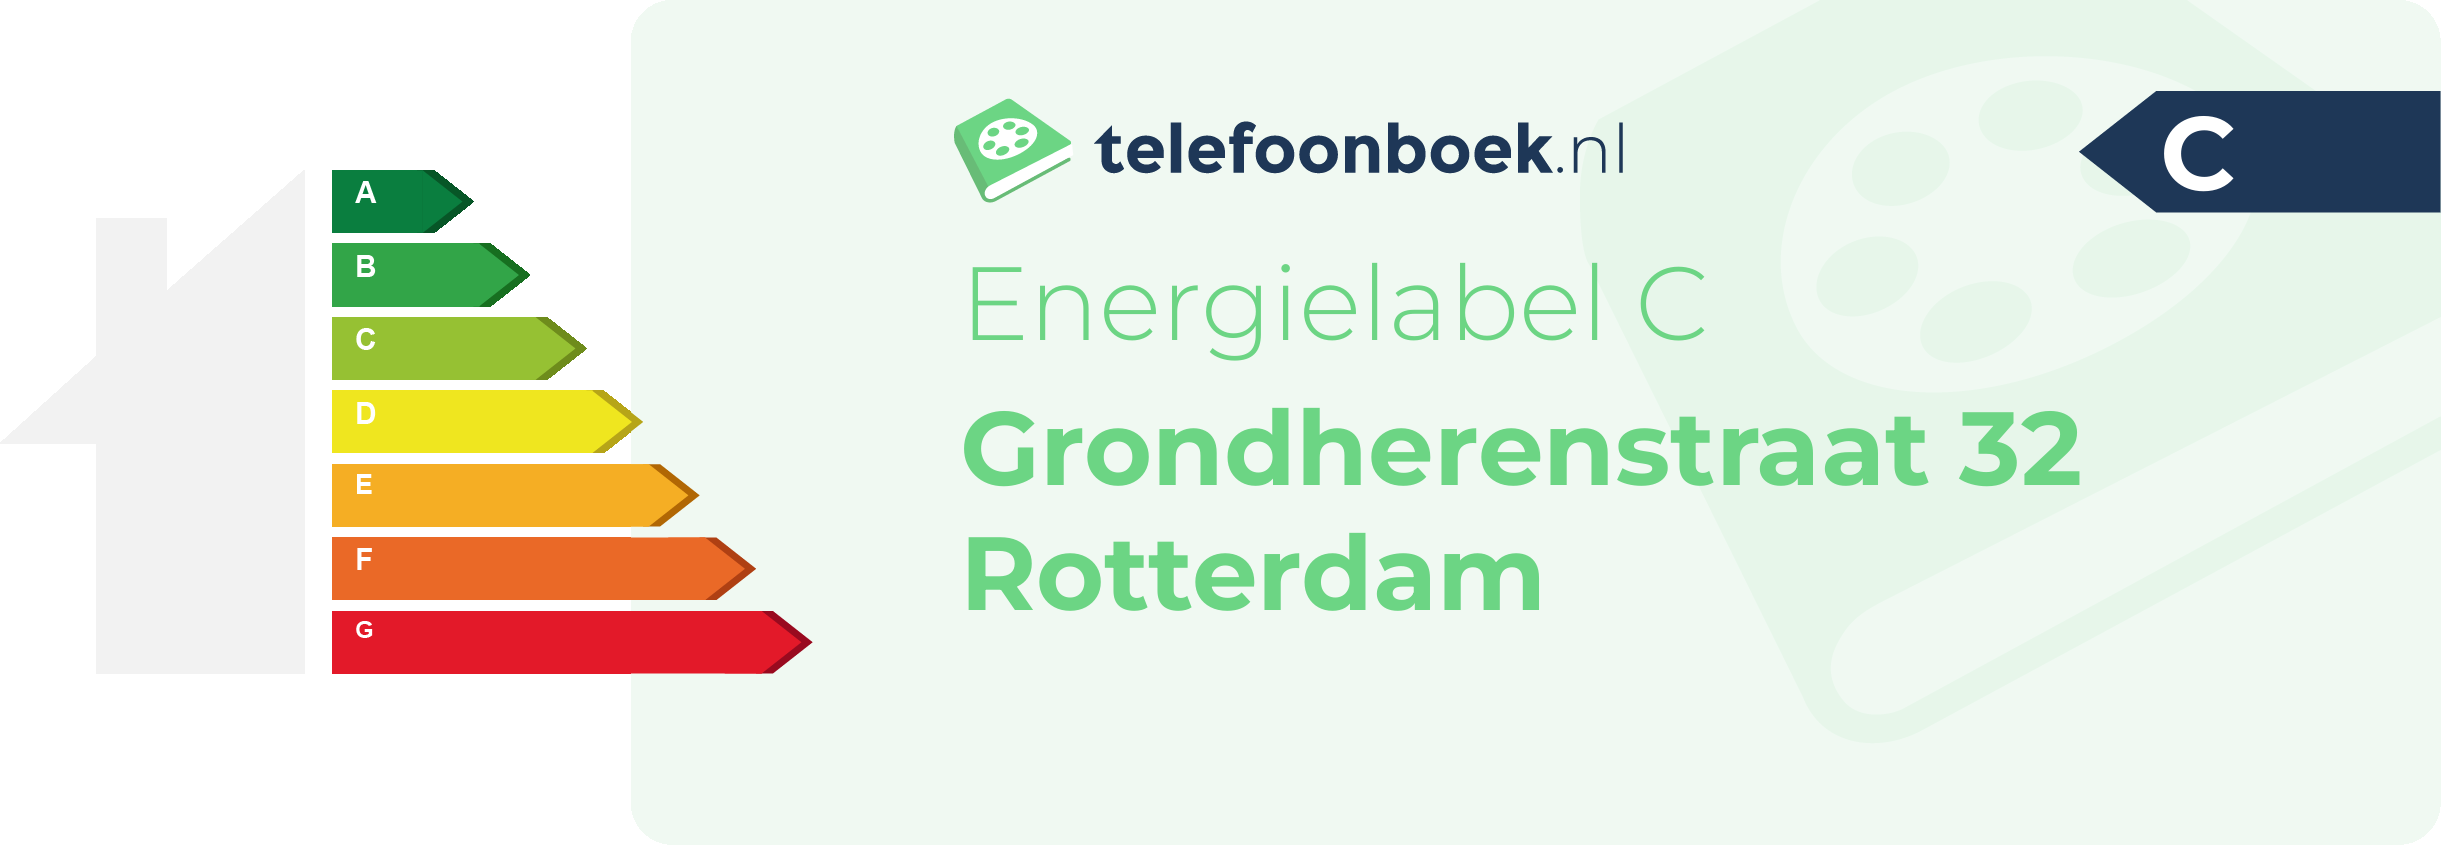 Energielabel Grondherenstraat 32 Rotterdam